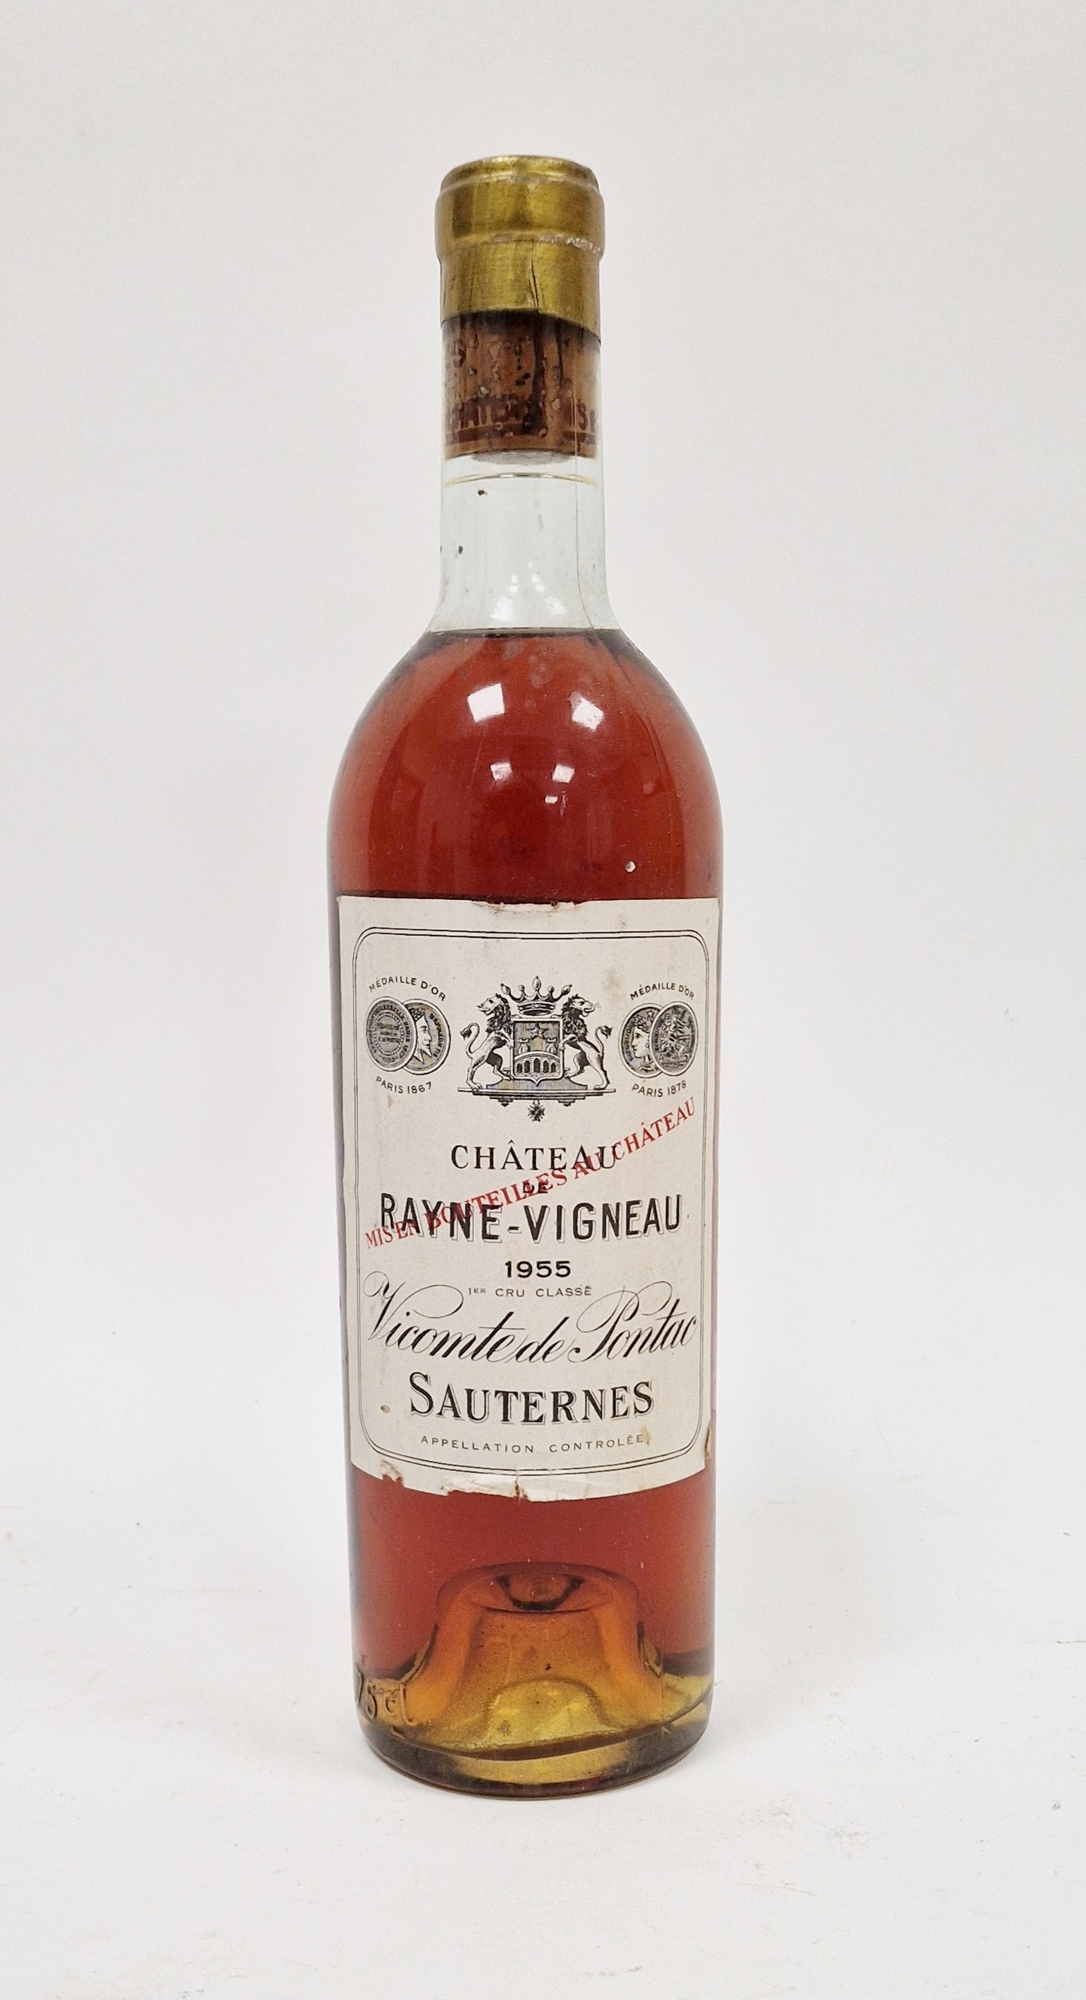 Bottle of Chateau Rayne-Vigneau Vicomte de Pontac 1955 Sauternes (high shoulder)